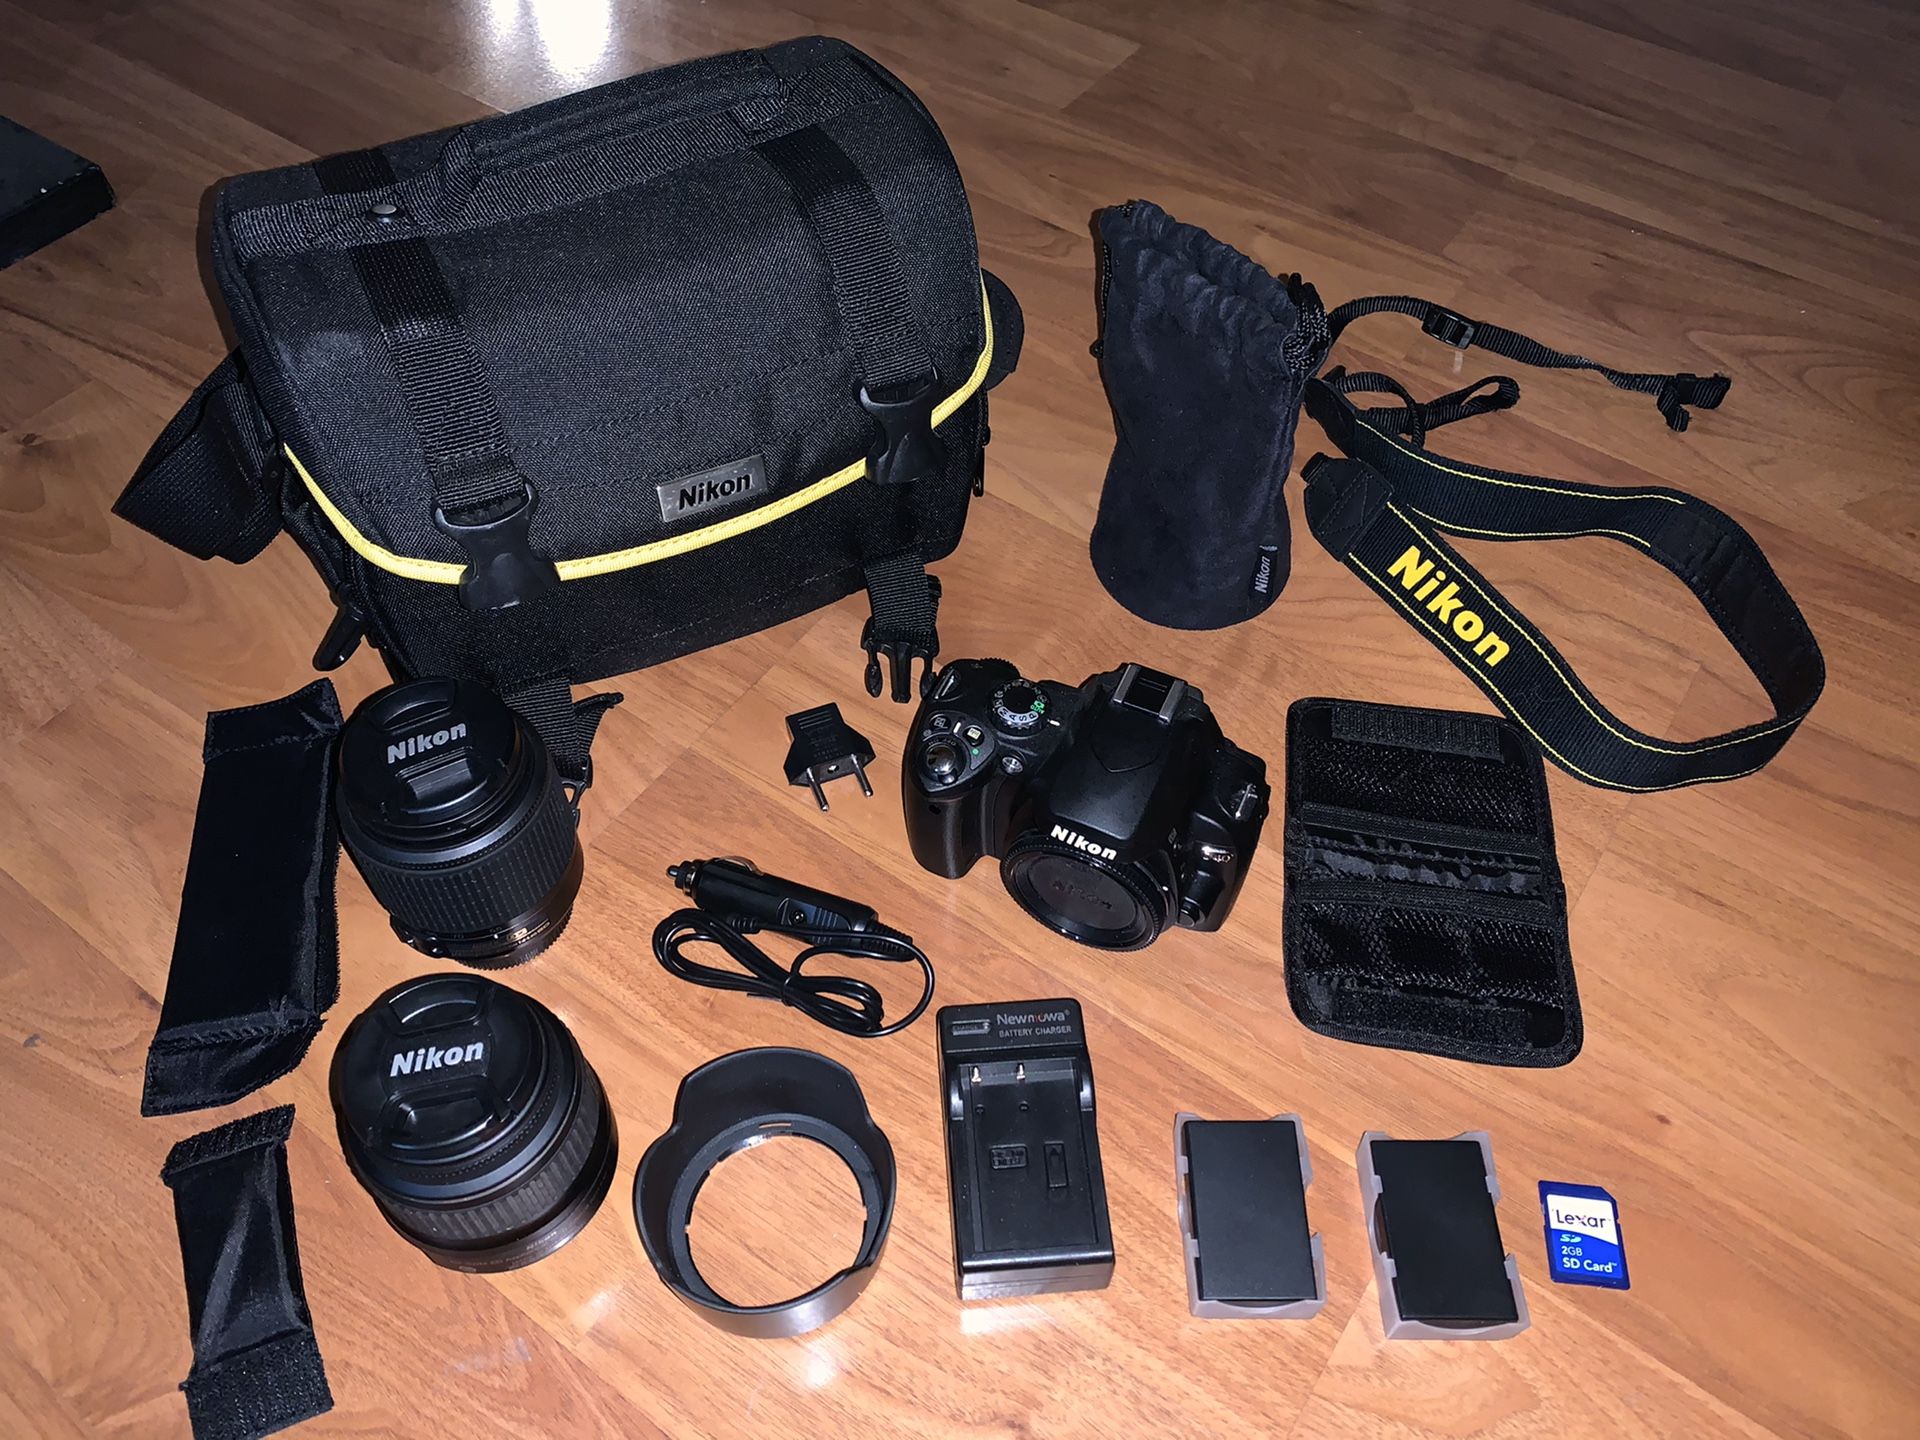 Nikon D40 DSLR camera kit